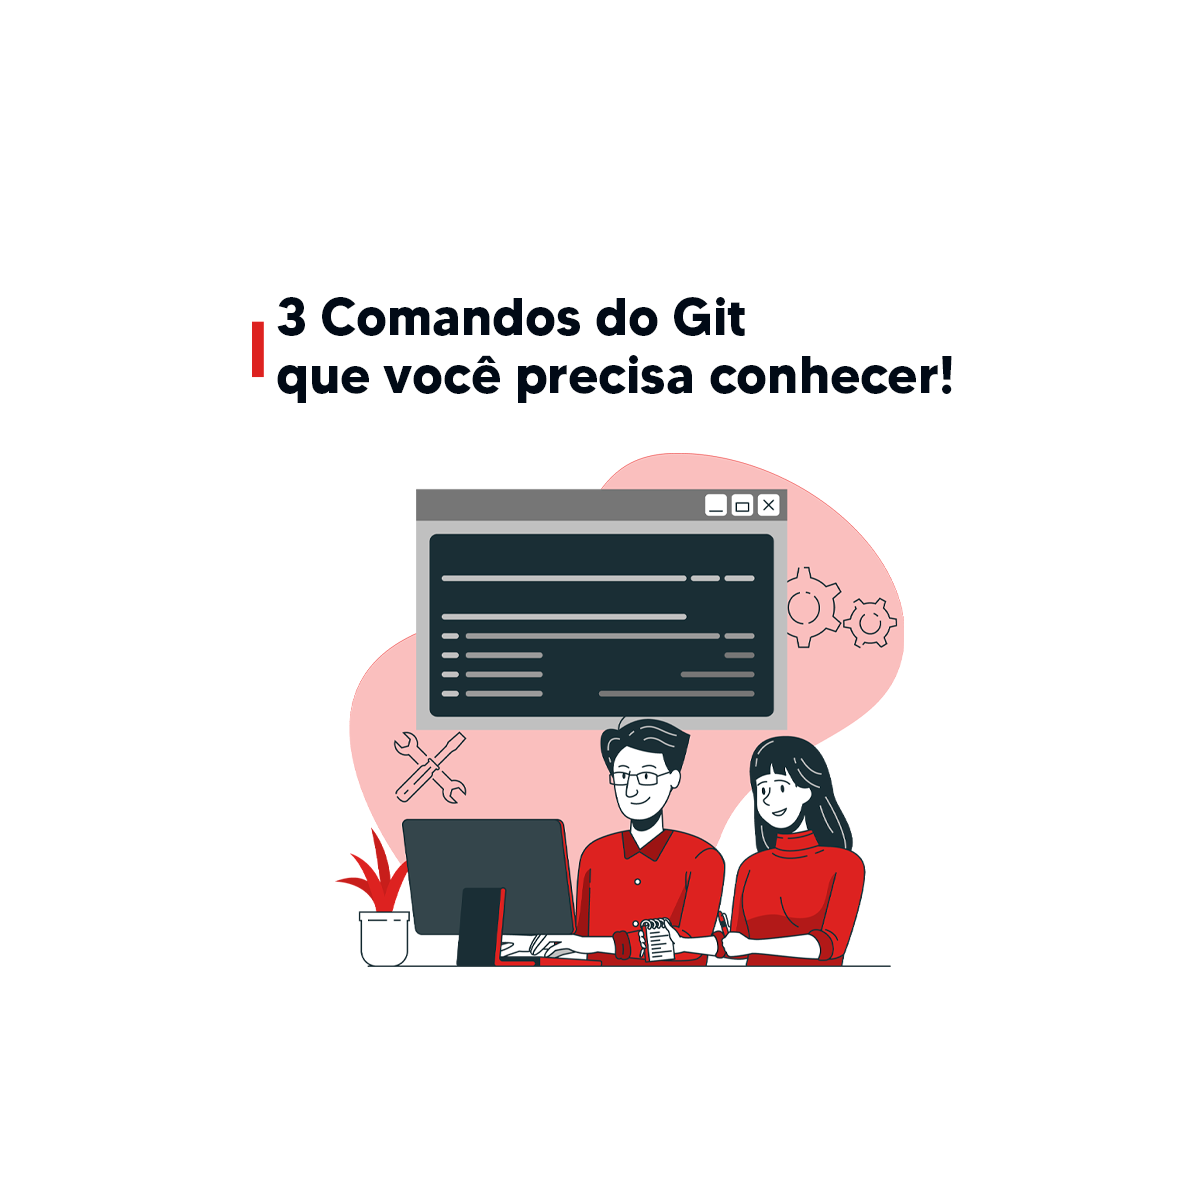 3 Comandos do Git que você precisa conhecer!